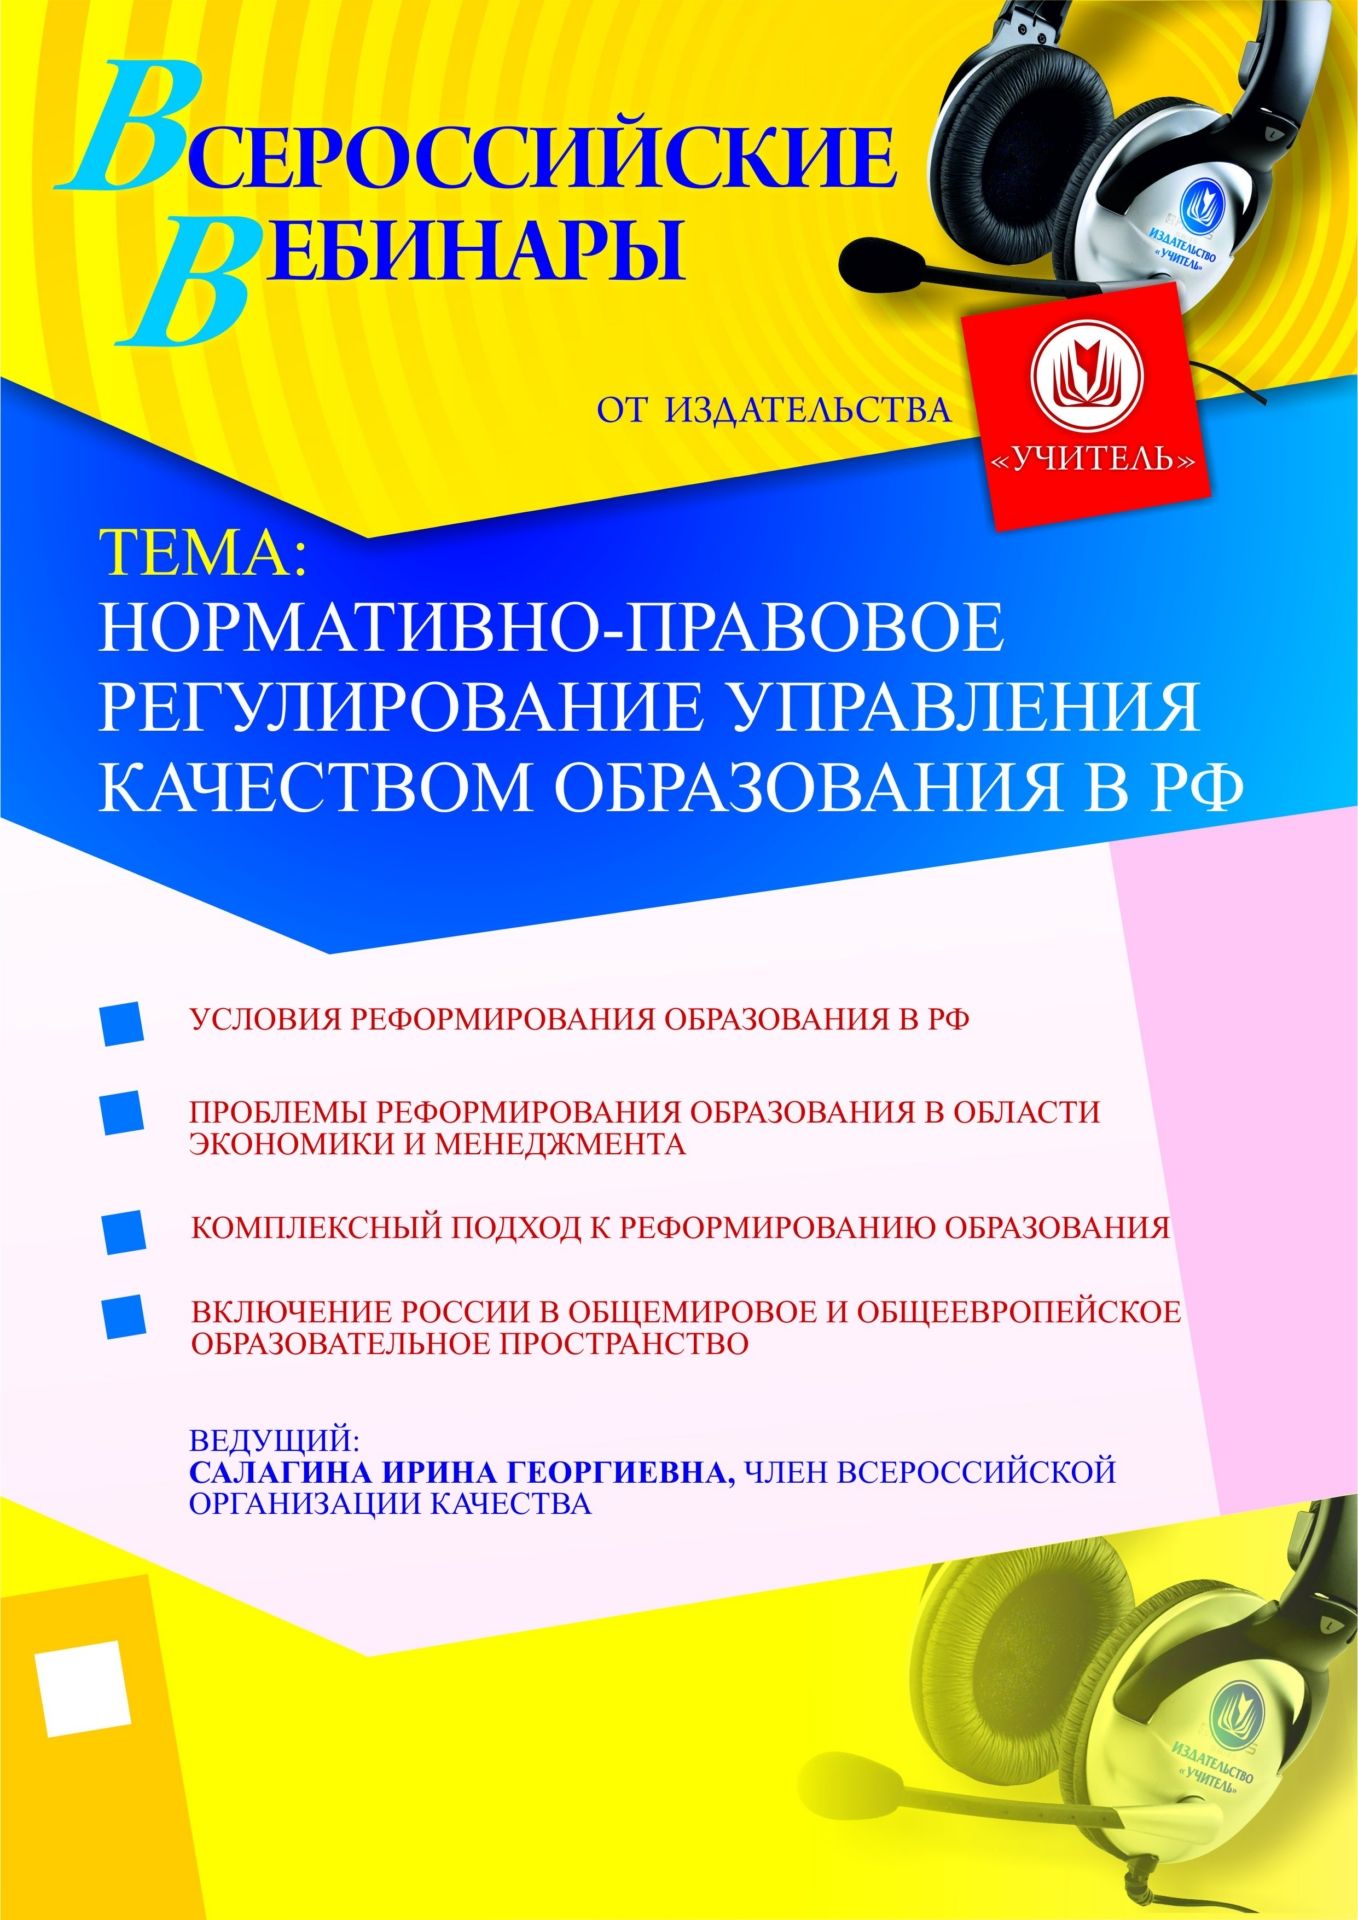 Нормативно-правовое регулирование управления качеством образования в РФ СТОФ-191 - фото 1